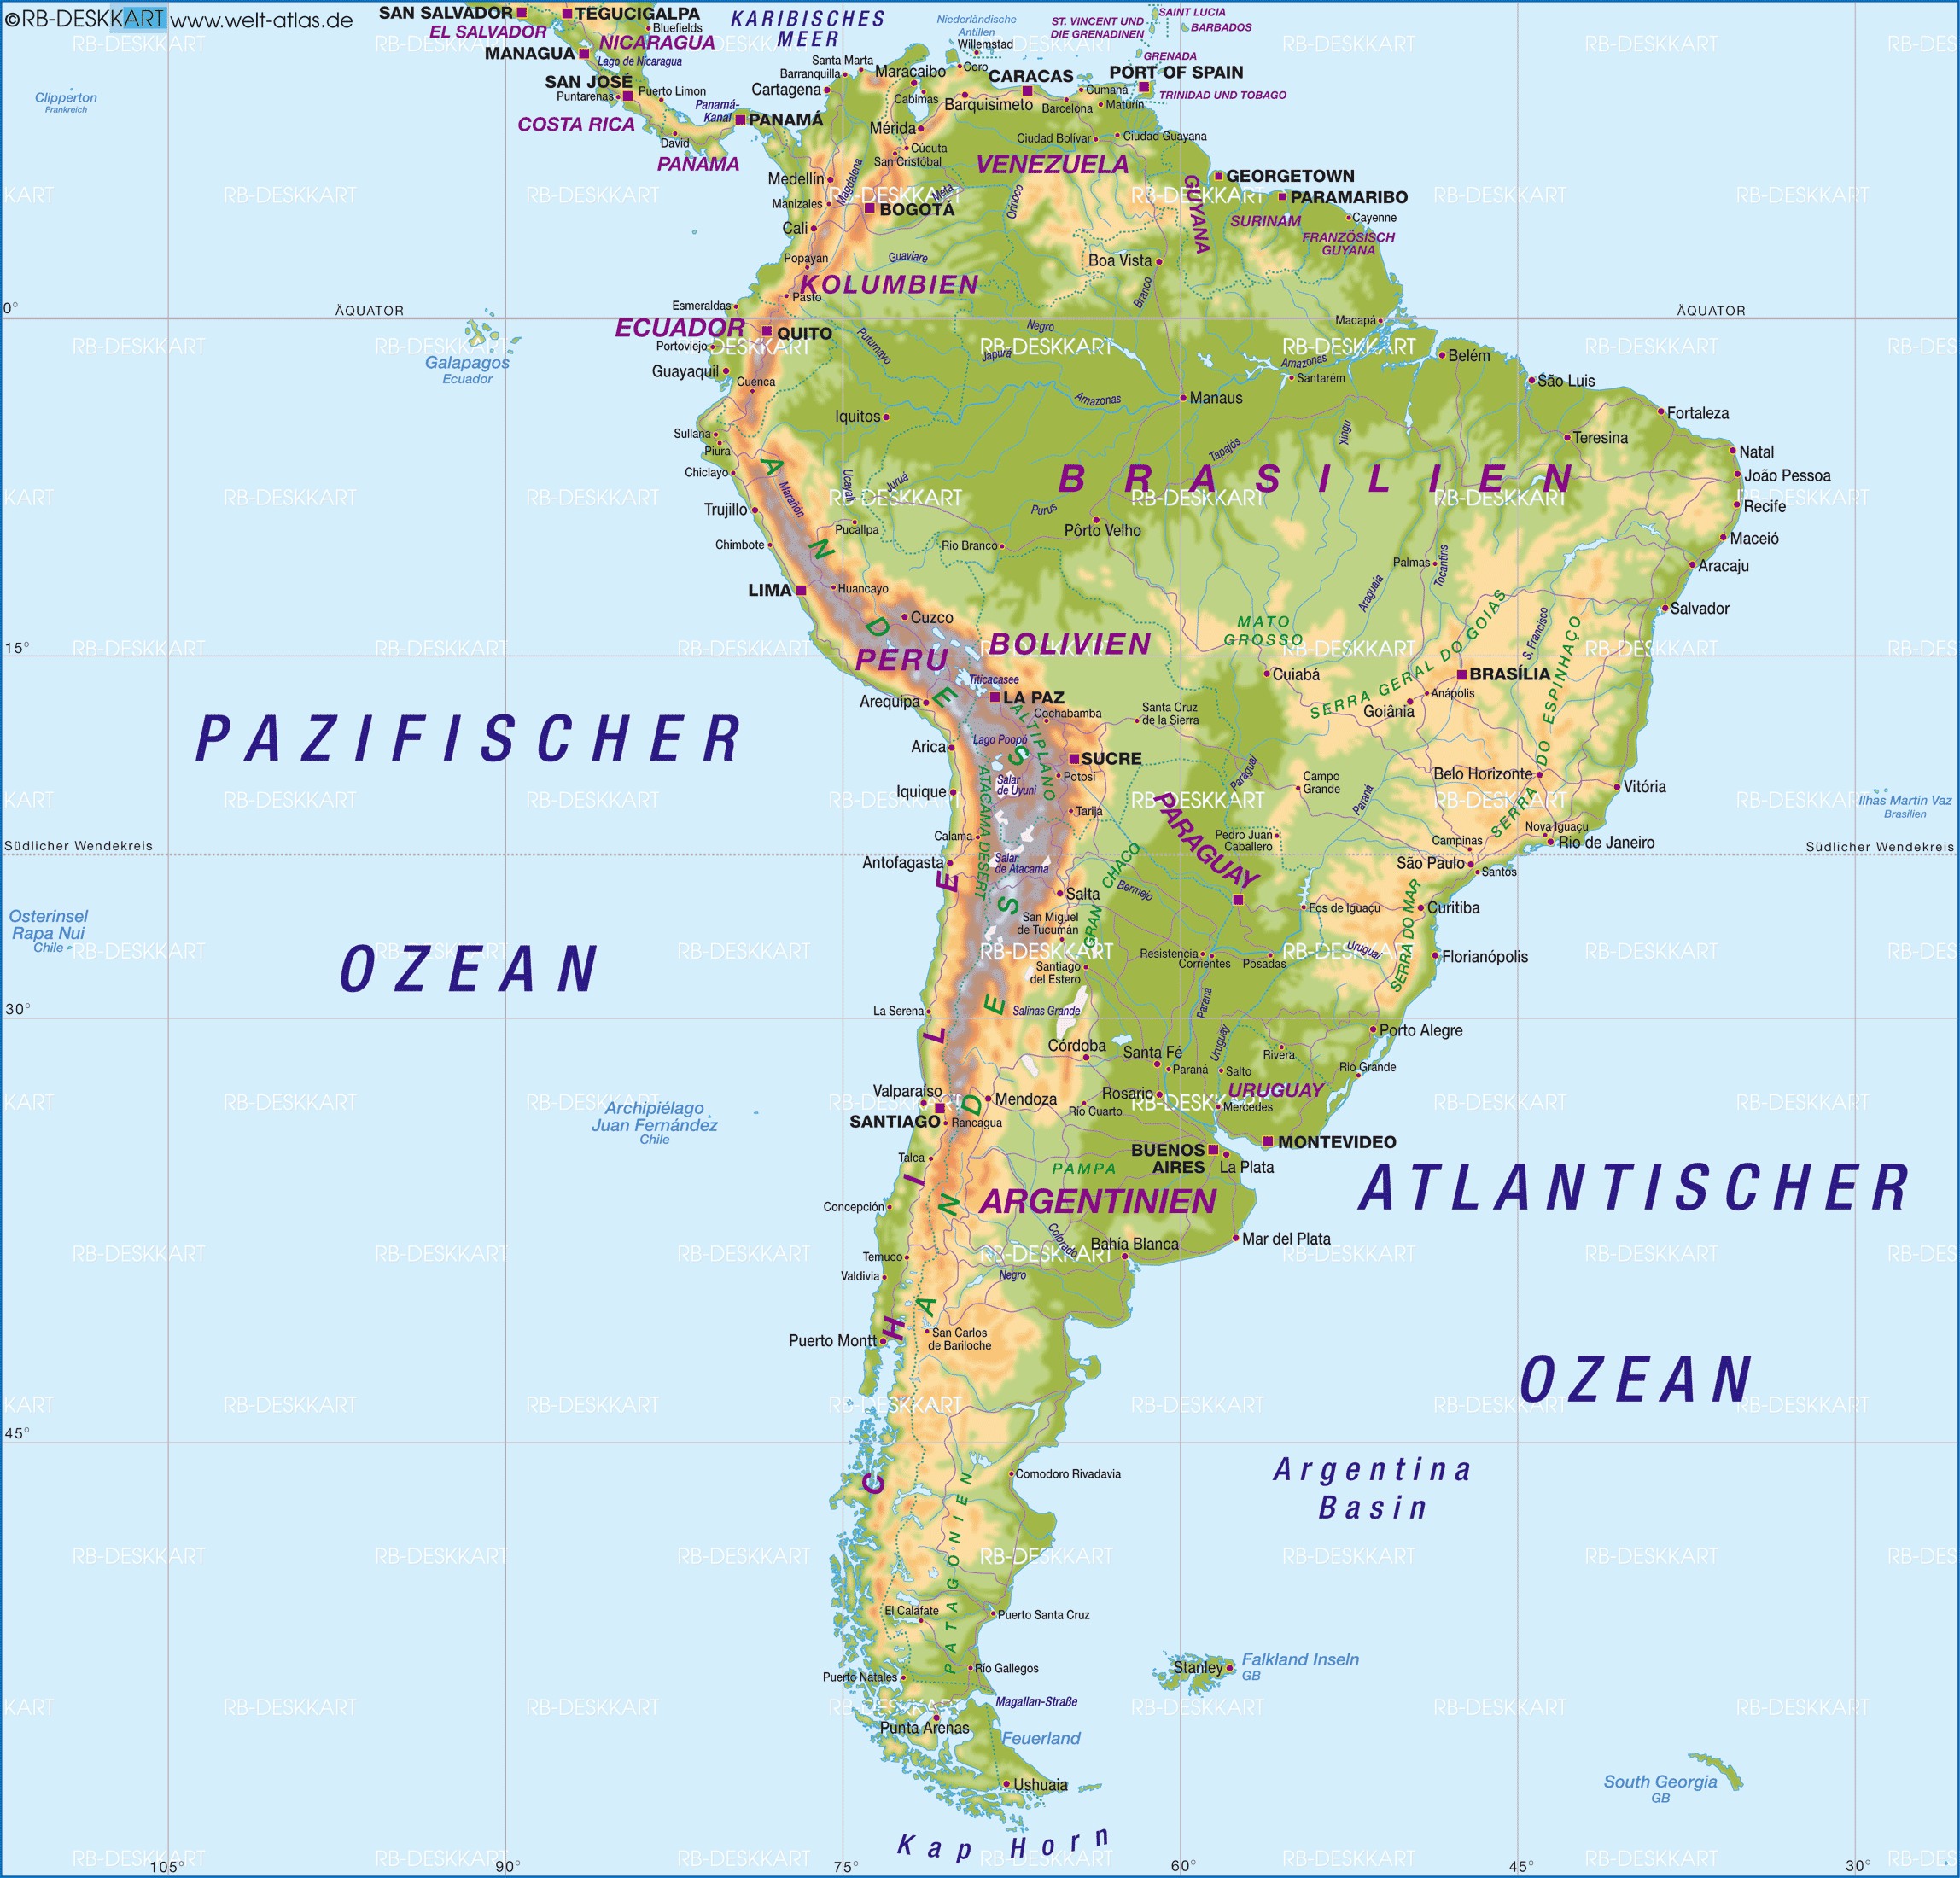 Äquator südamerika karte - Der absolute Vergleichssieger unserer Redaktion